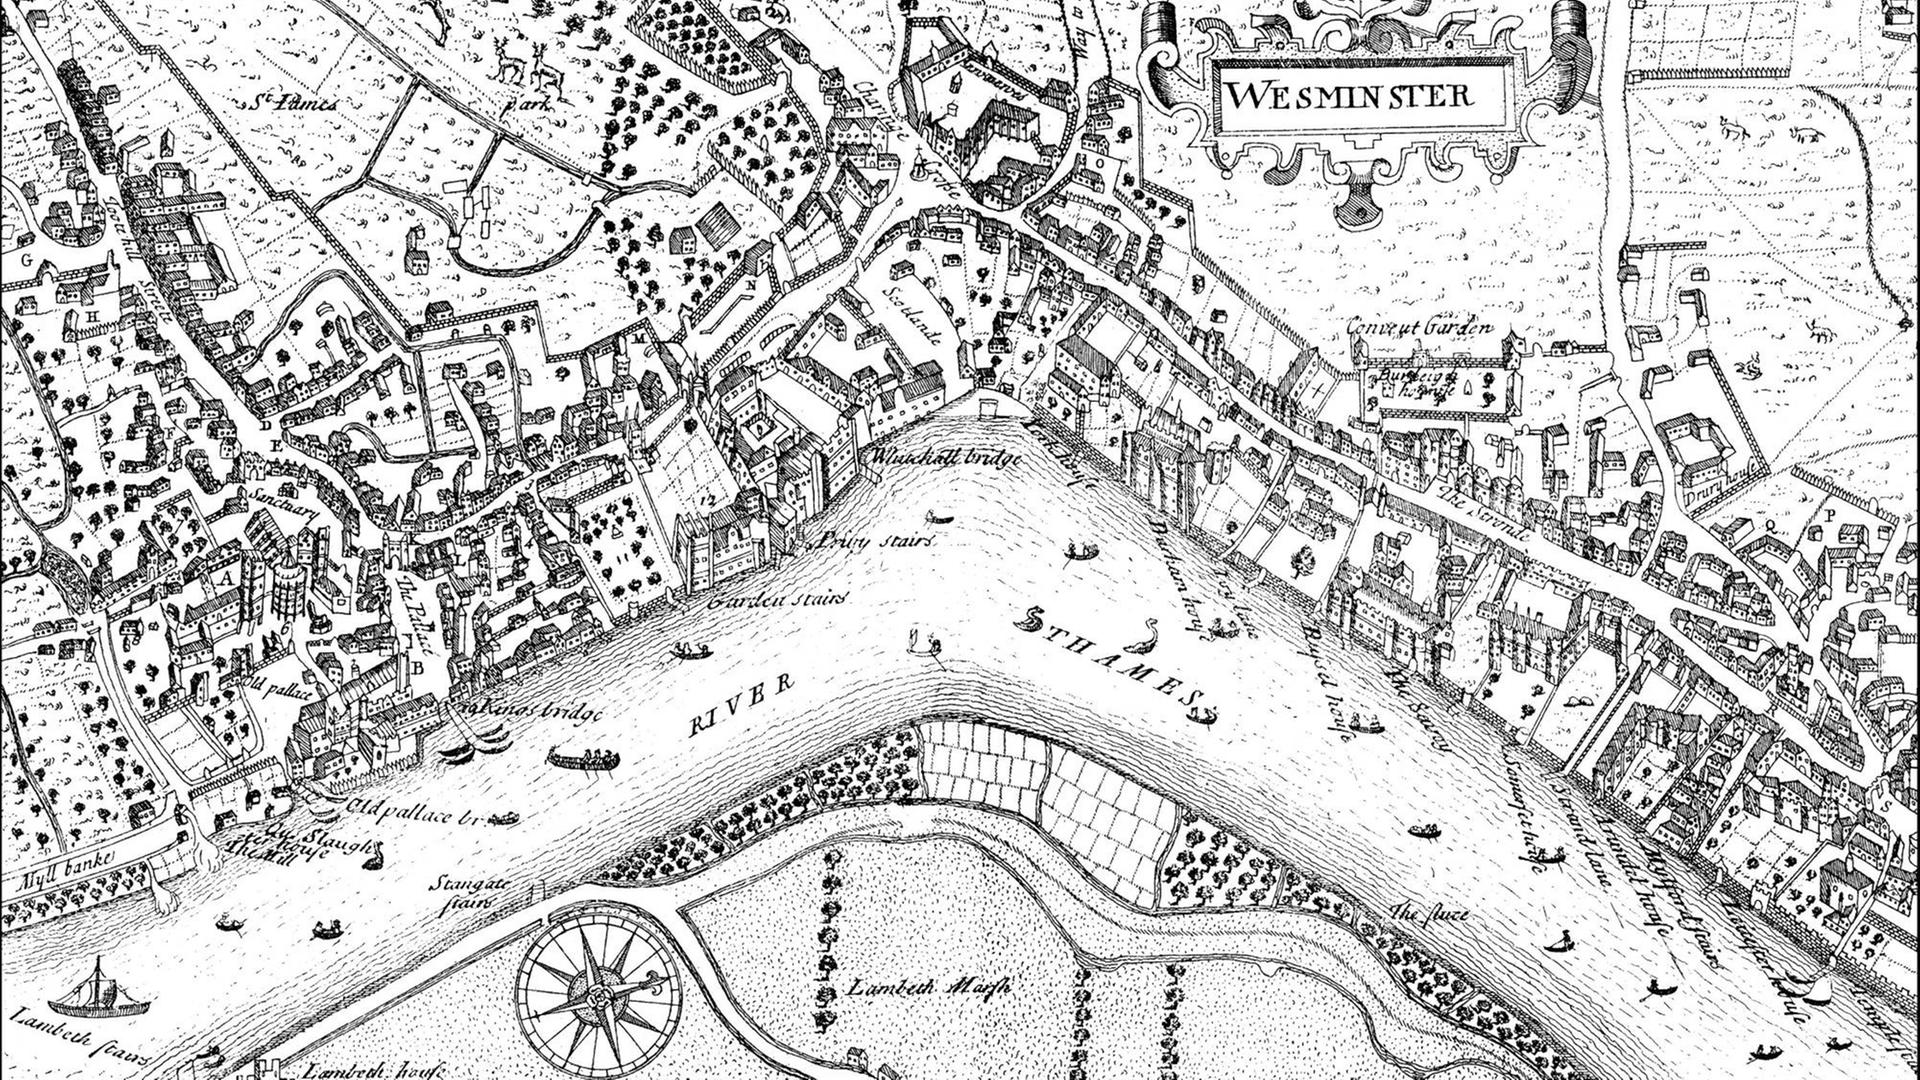 Historische Zeichnung der City of Westminster, einem Stadtbezirk von London, mit der der Themse im 17. Jahrhundert